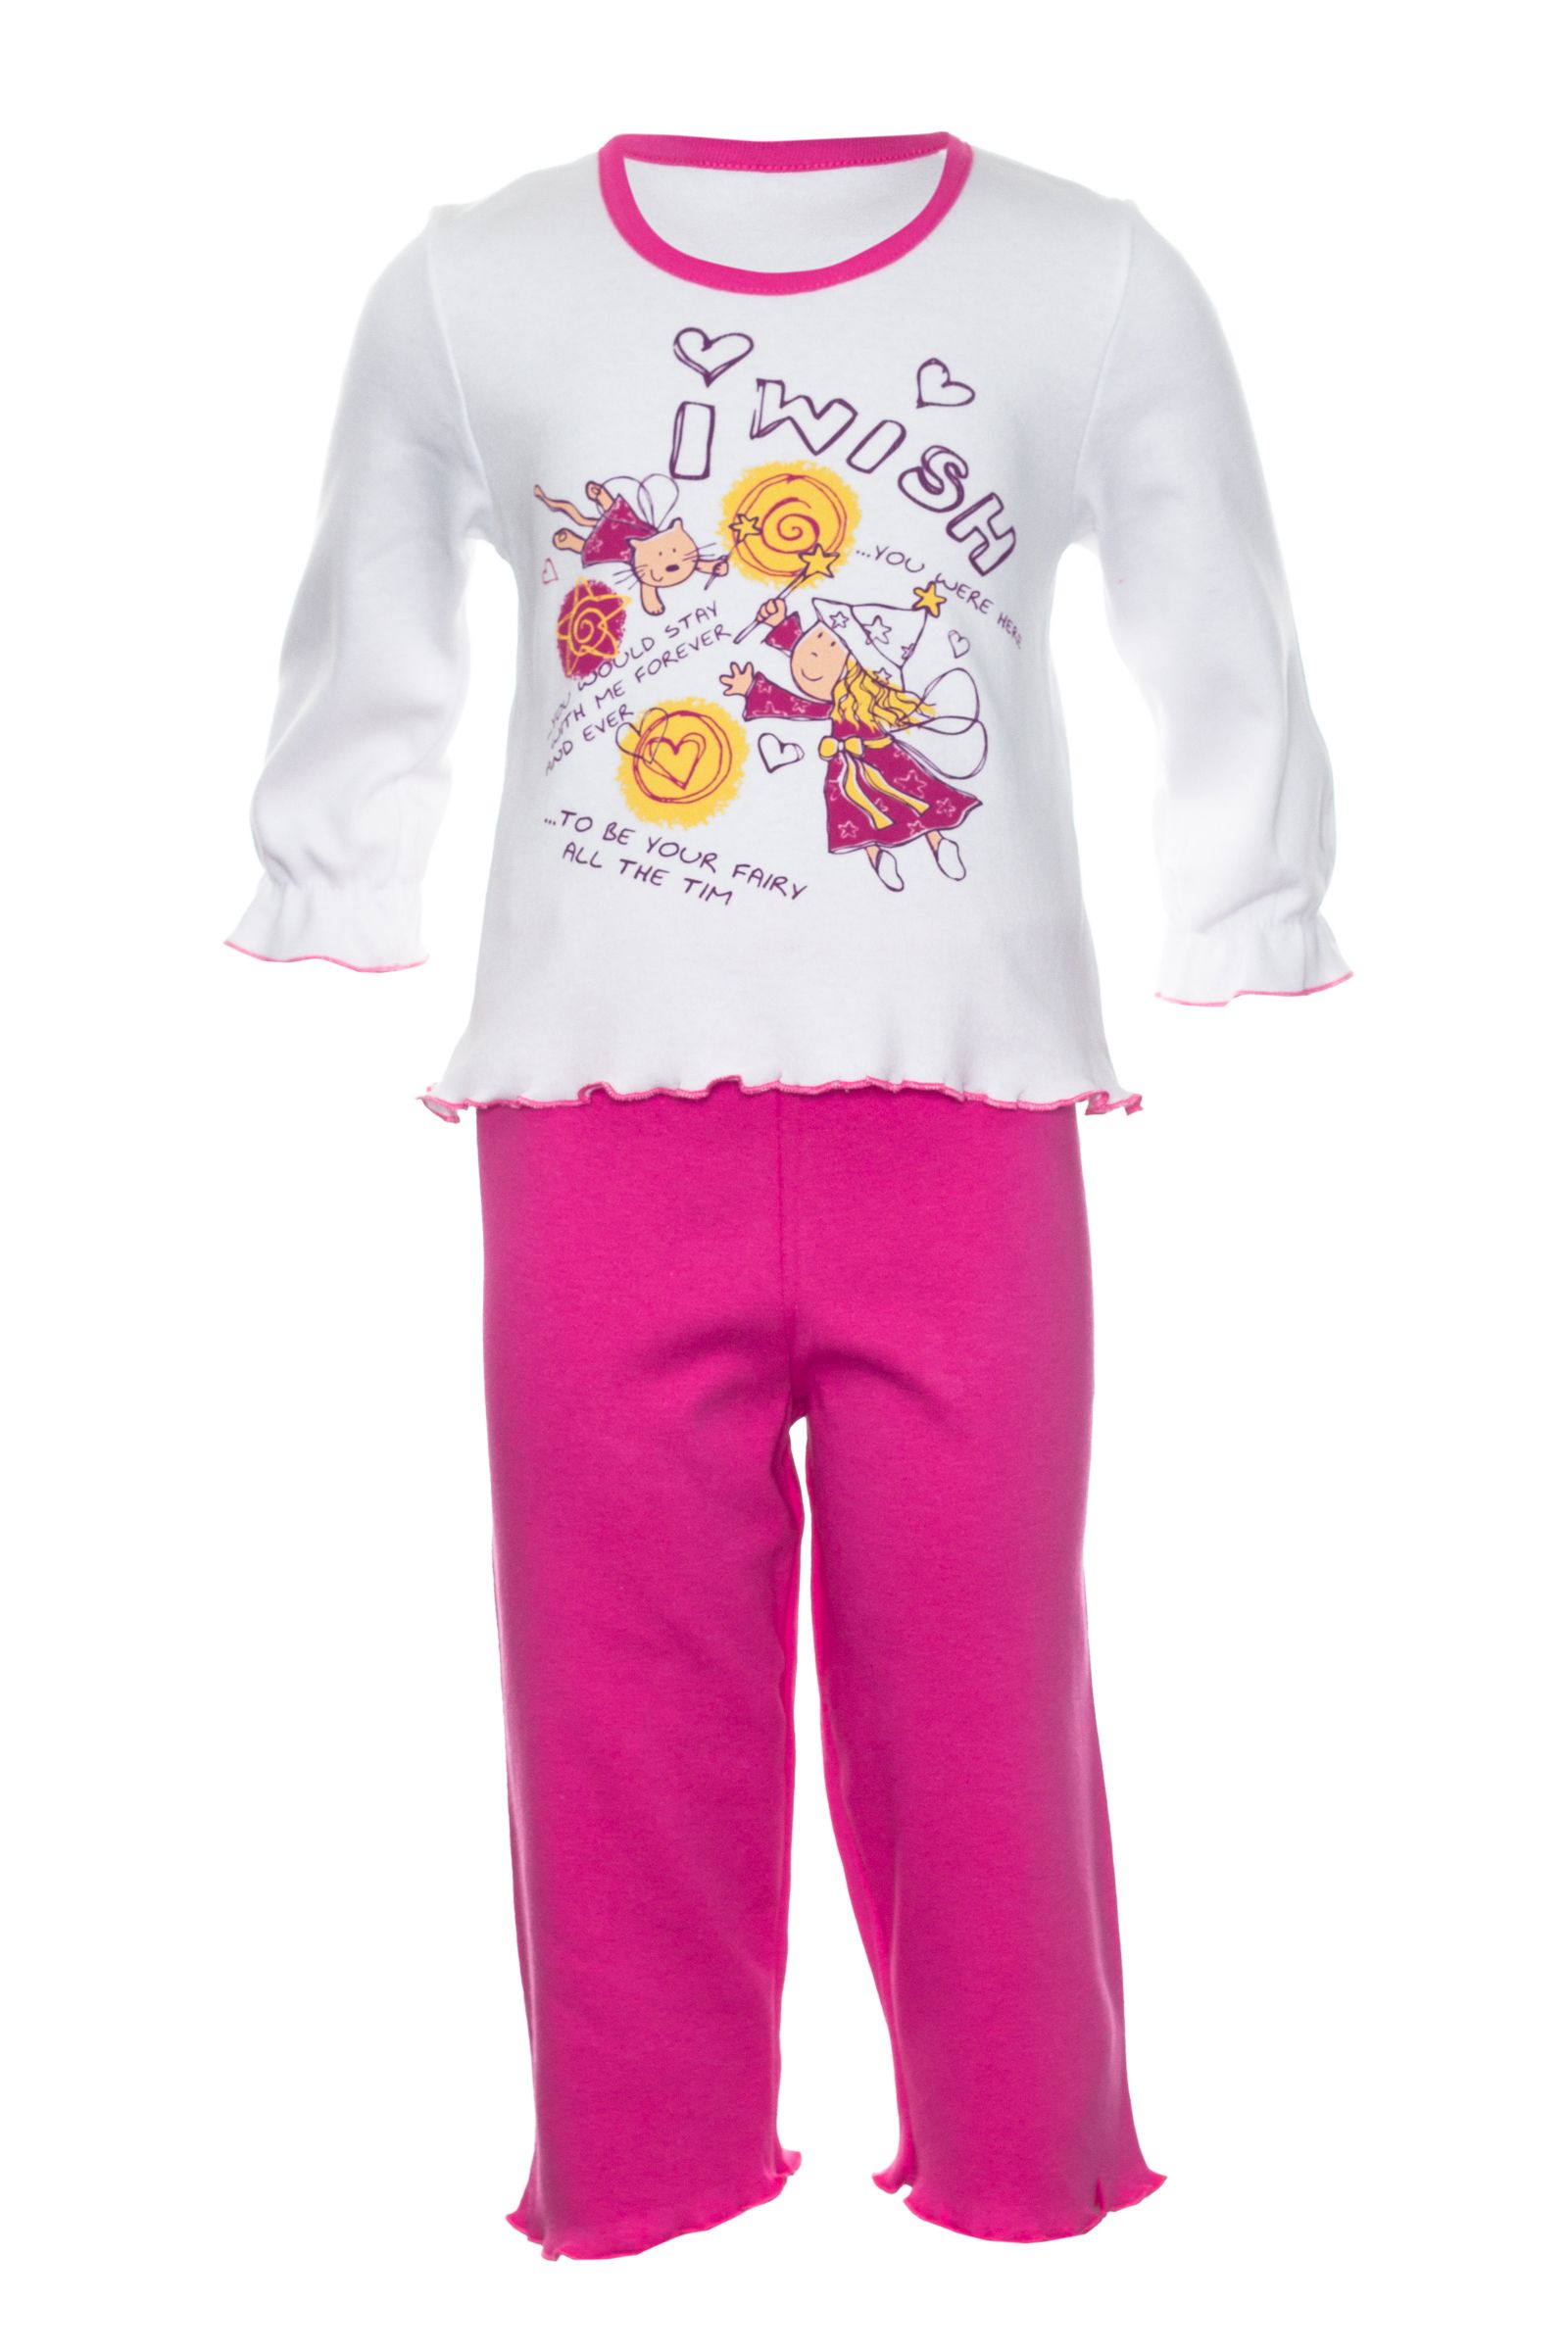 Пижама-ПЖ01-1250 оптом от производителя детской одежды 'Алёна'